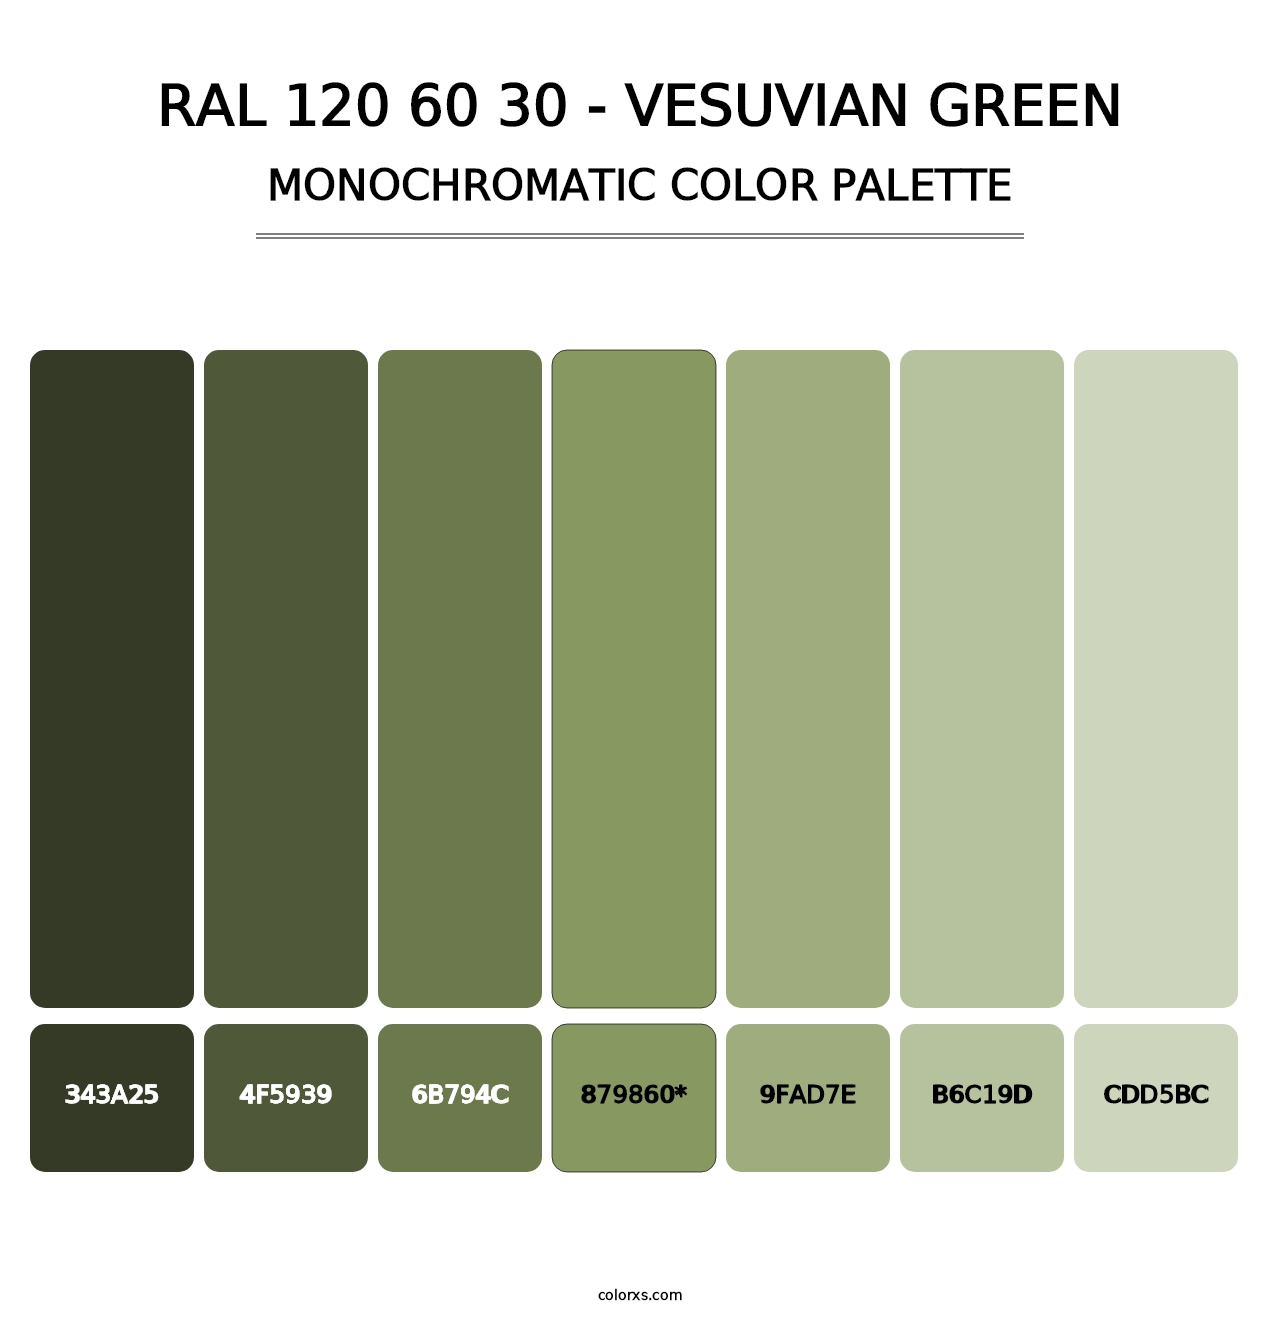 RAL 120 60 30 - Vesuvian Green - Monochromatic Color Palette